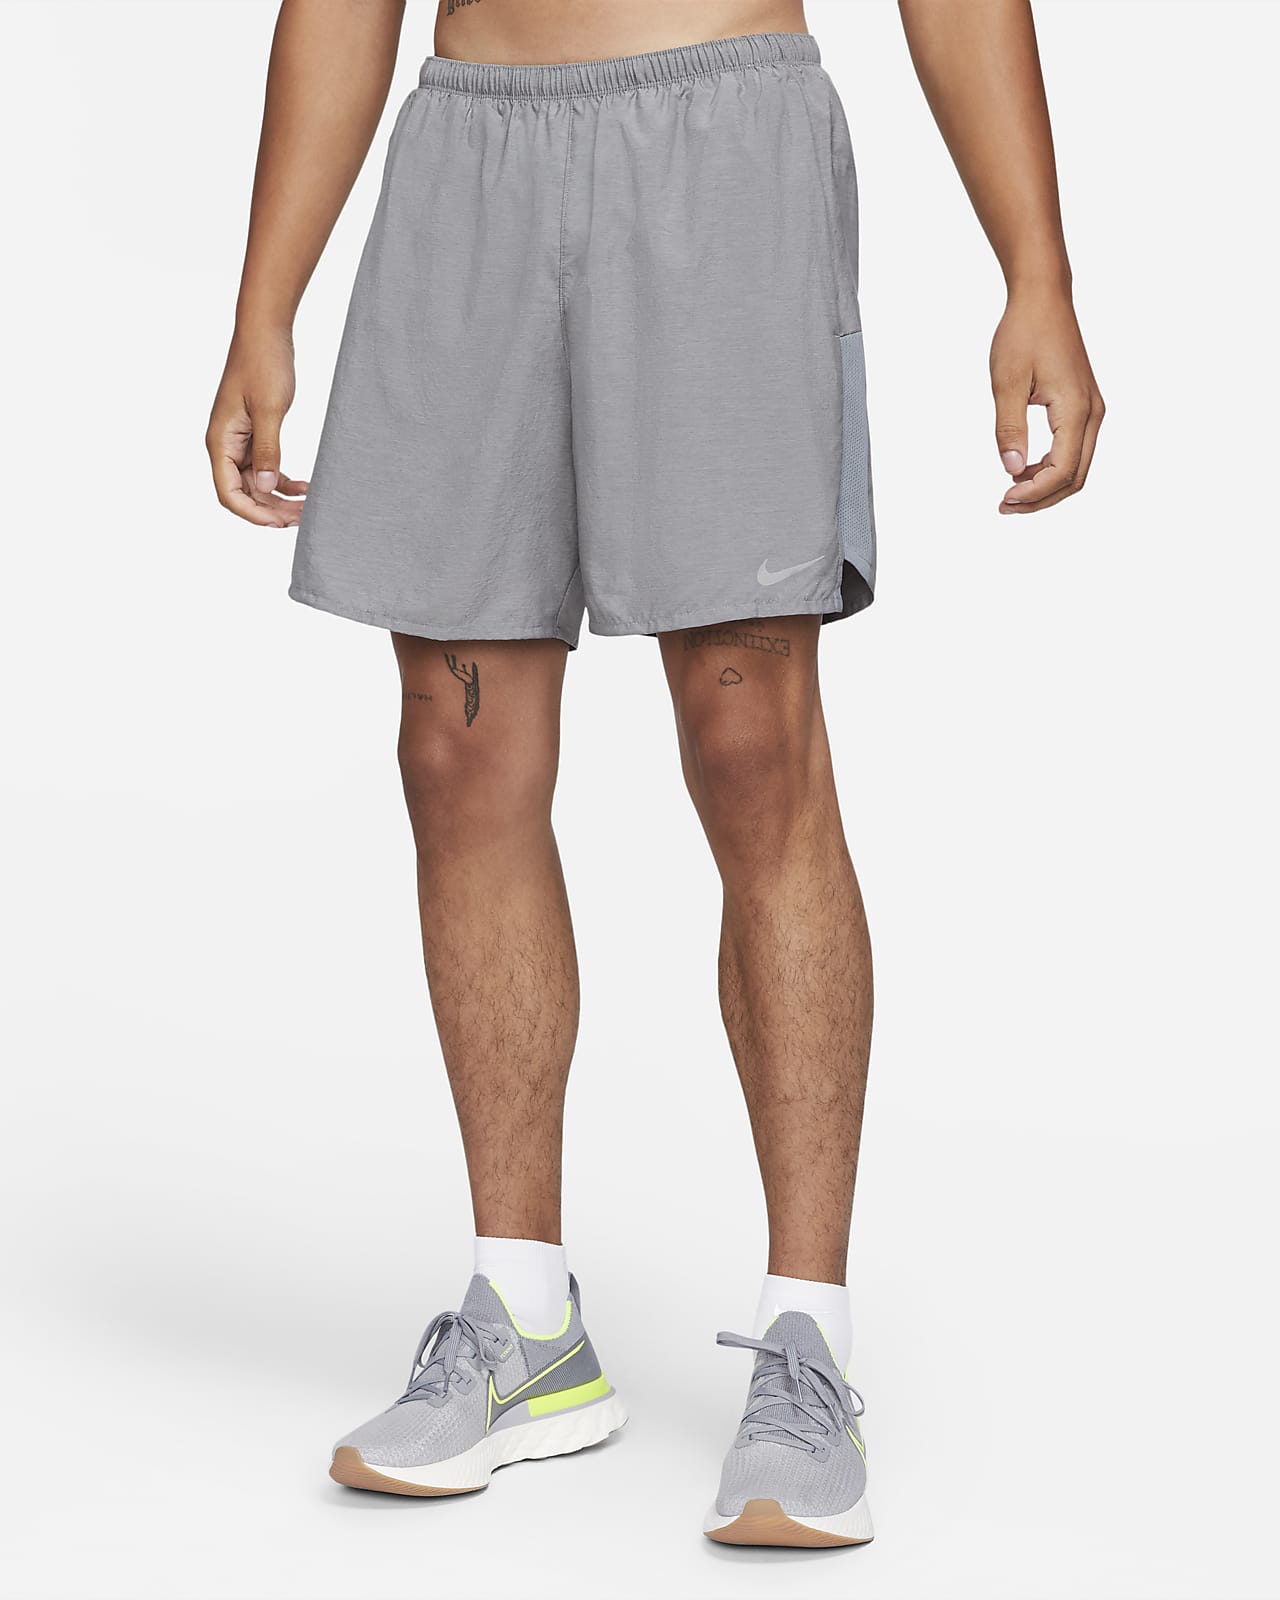 bicapa Agregar elevación Shorts de running forrados de 18 cm para hombre Nike Challenger. Nike.com